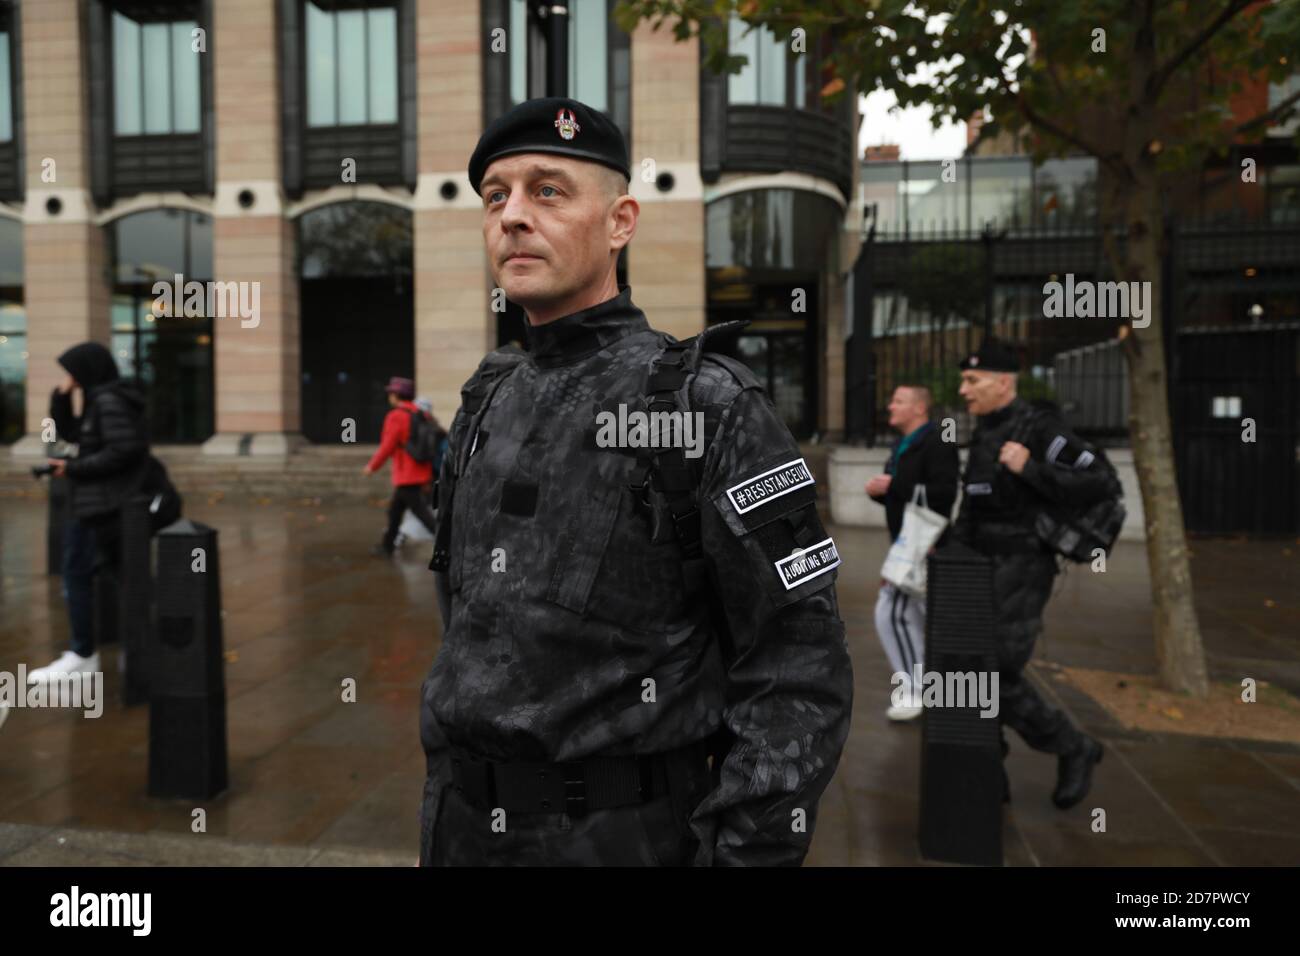 Unite per la libertà anti lockdown, anti vaccino dimostrazione - Trafalgar Square, Londra, 24 ottobre 2020: Credit Natasha Quarmby/ALAMY LIVE NEWS Foto Stock